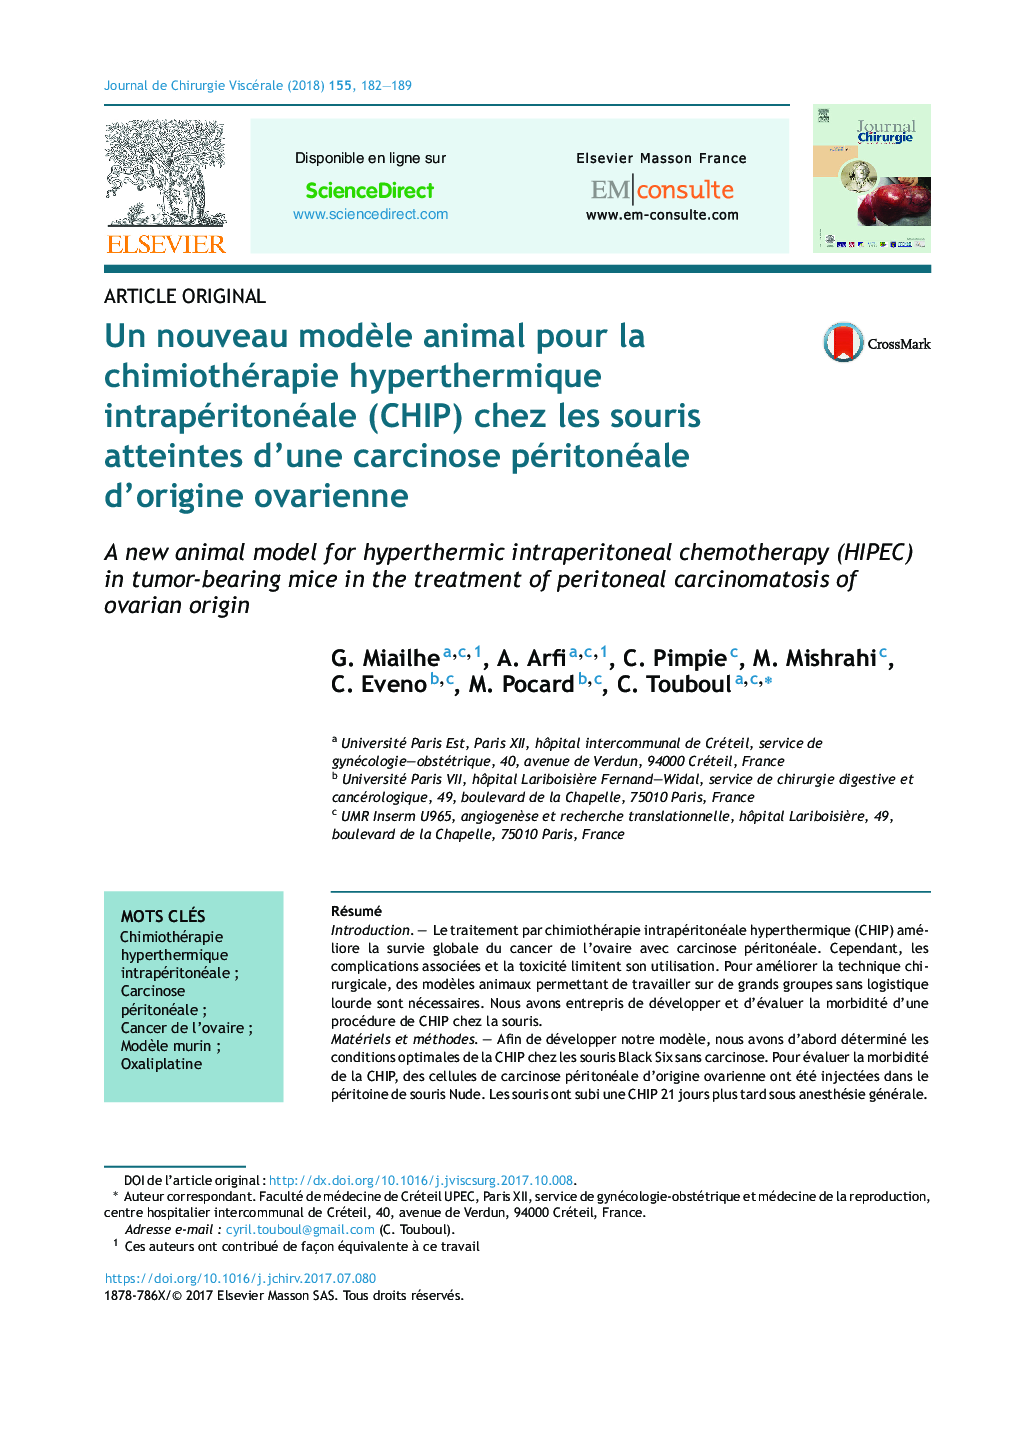 Un nouveau modÃ¨le animal pour la chimiothérapie hyperthermique intrapéritonéale (CHIP) chez les souris atteintes d'une carcinose péritonéale d'origine ovarienne